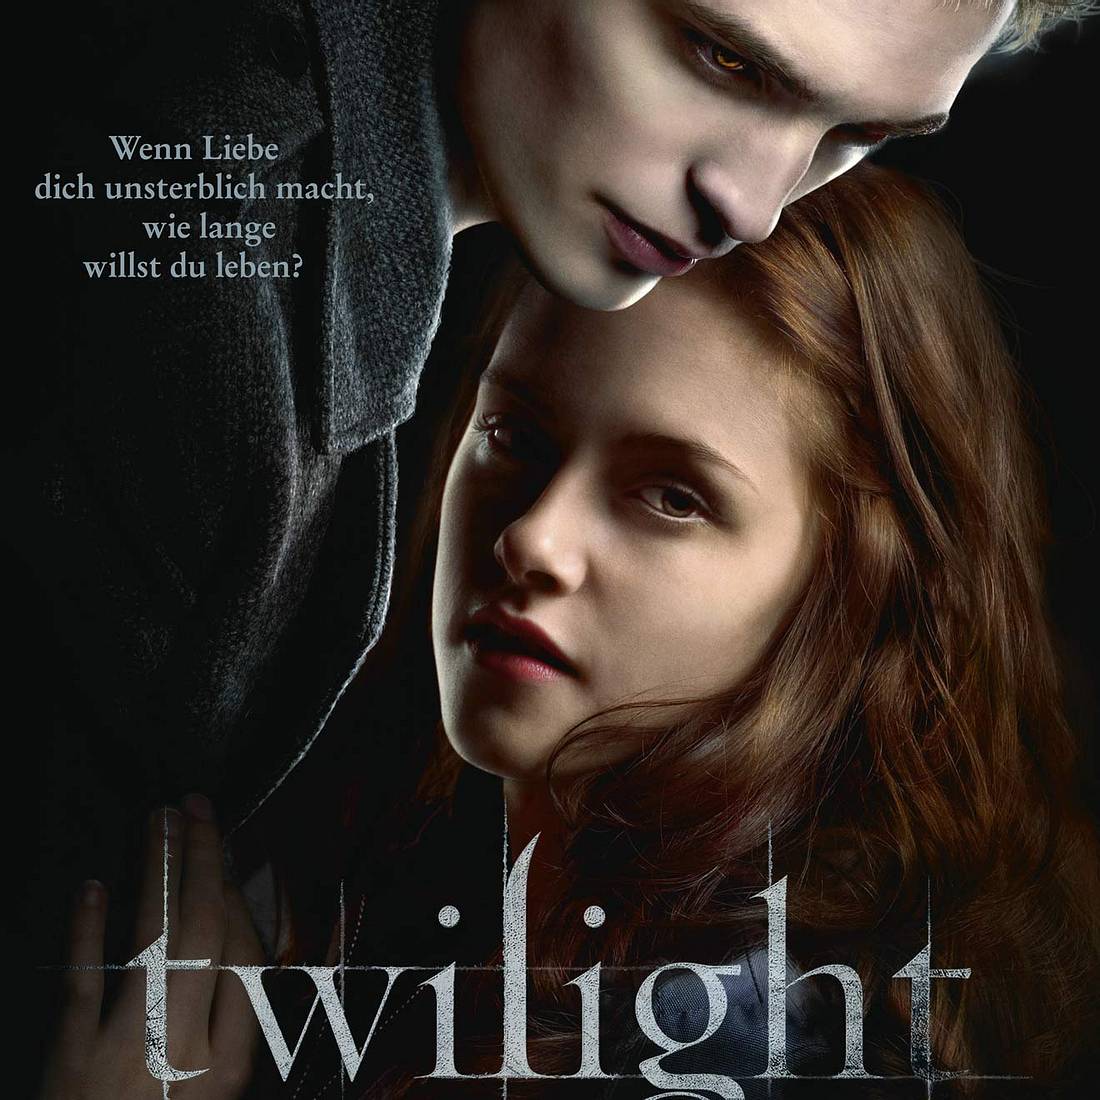 Twilight: Die besten Filme und Serien der 2000er